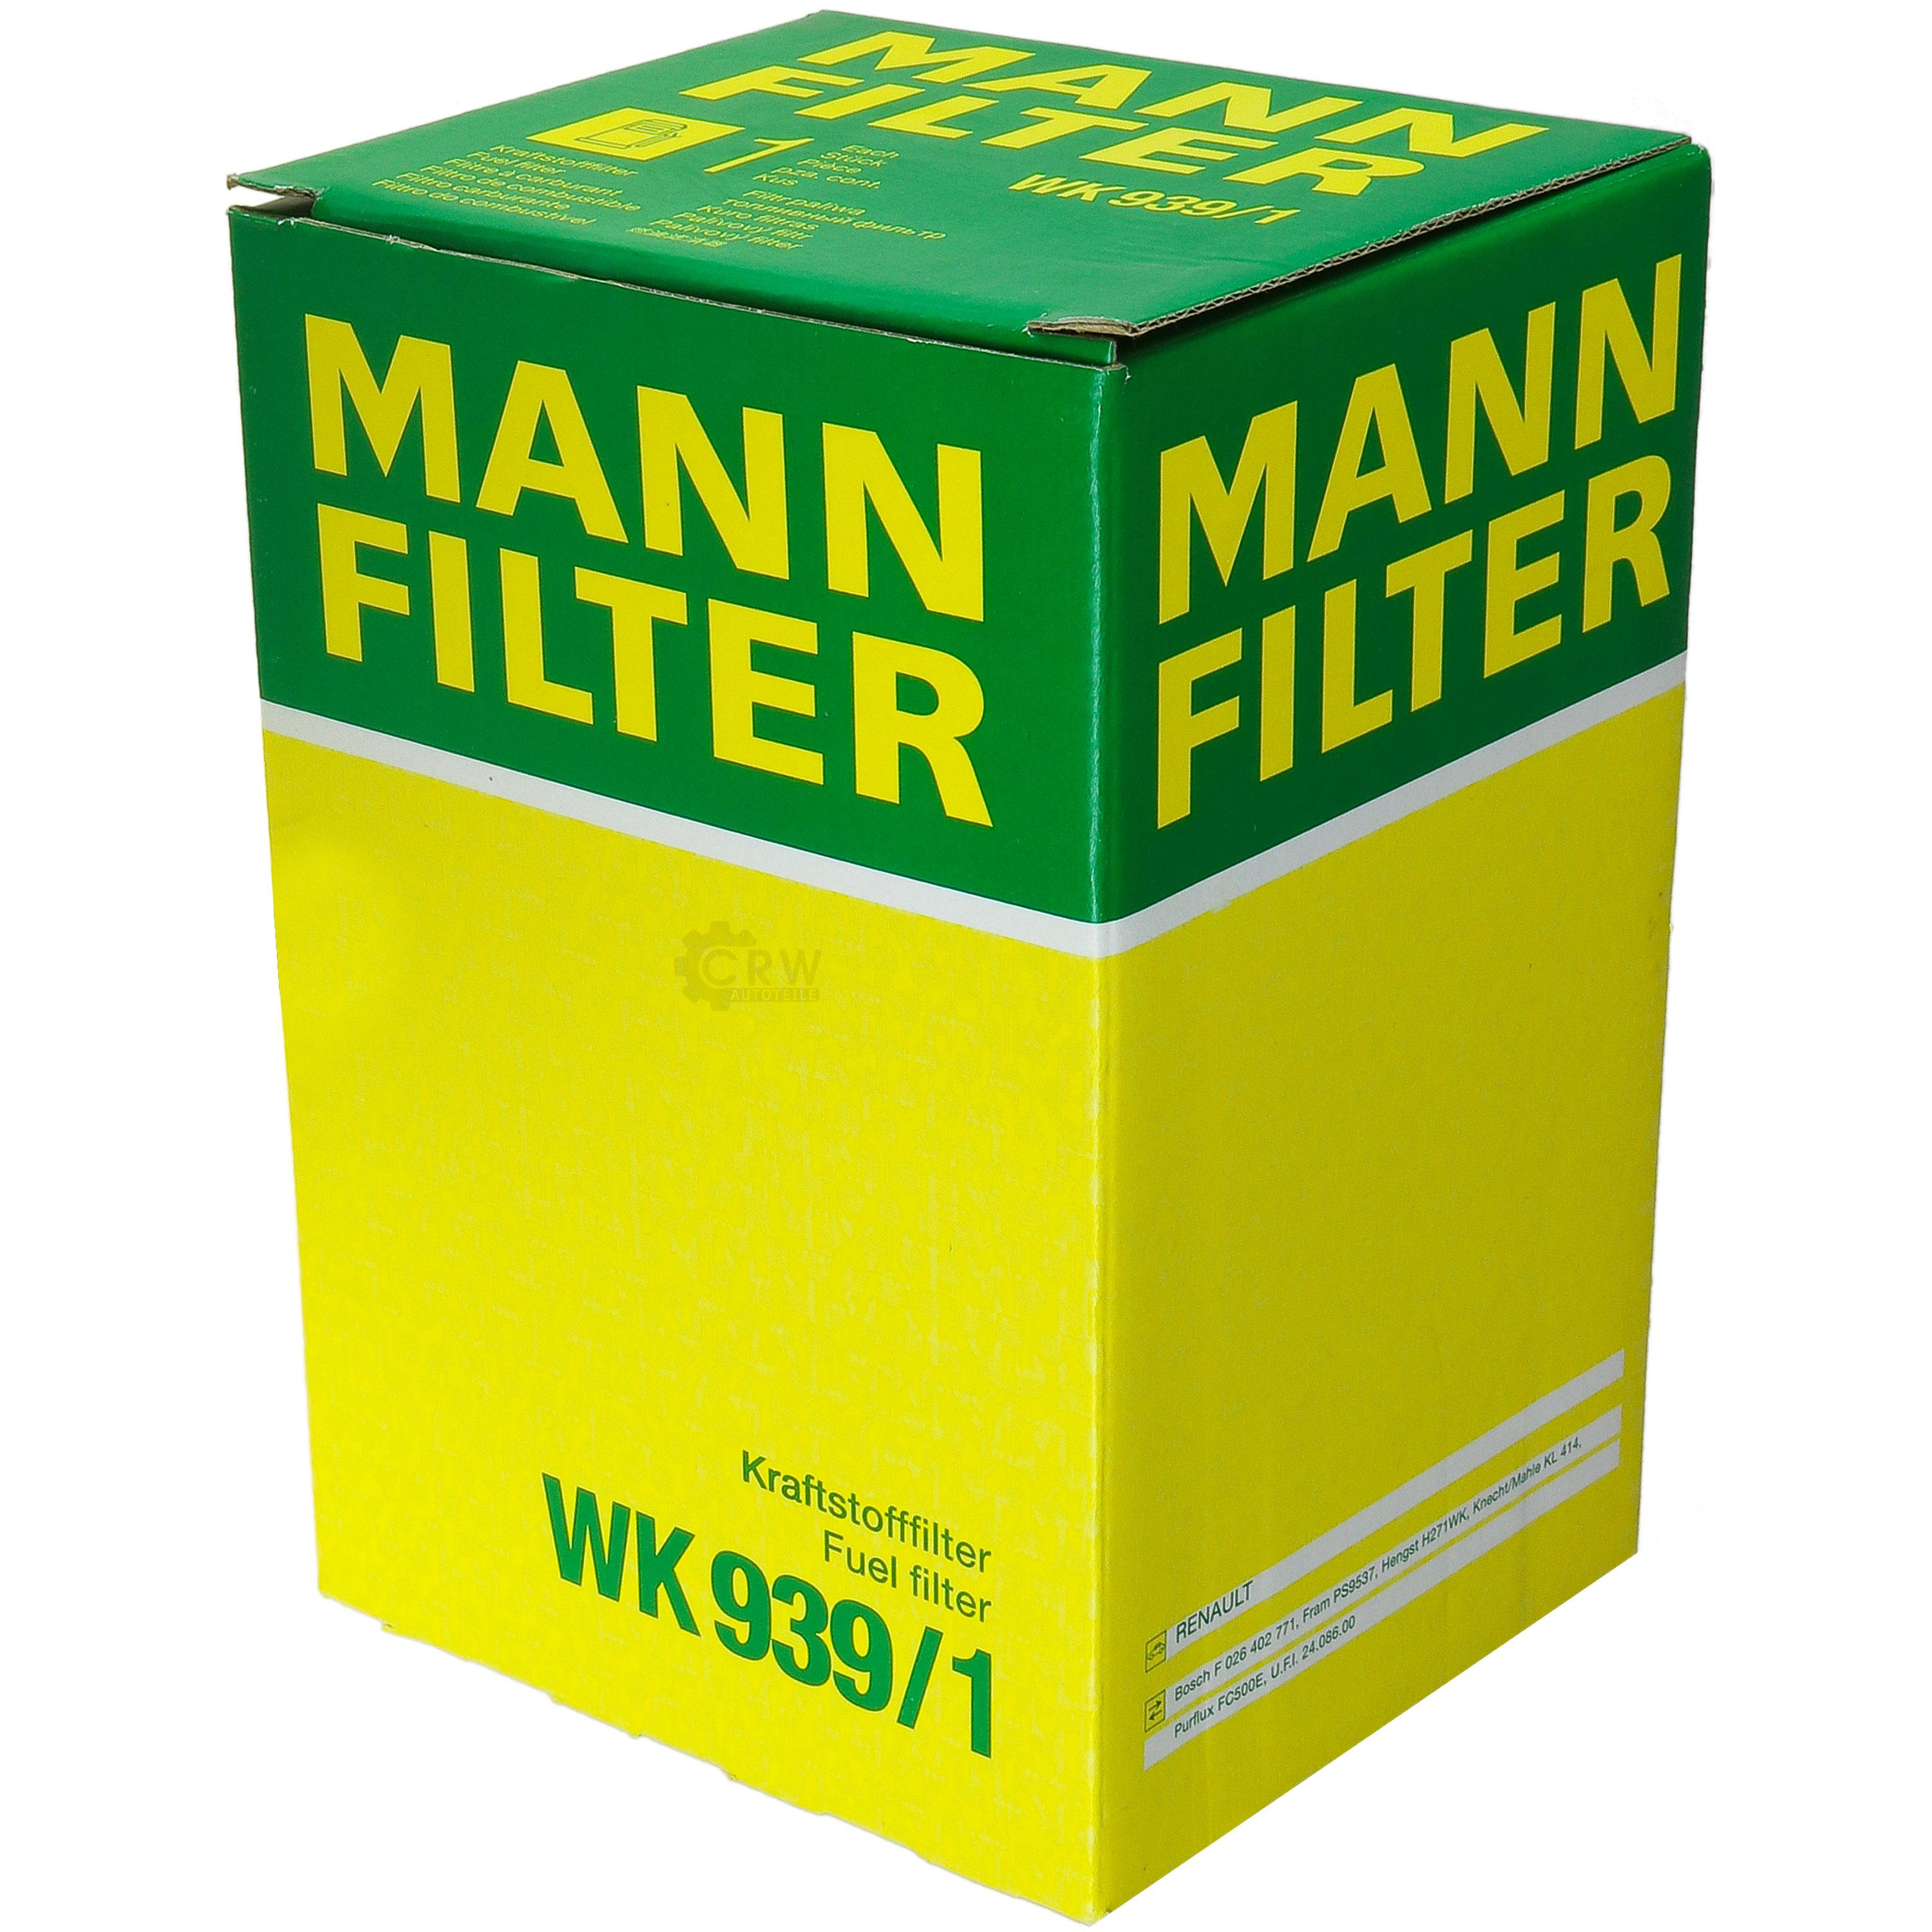 MANN-FILTER Kraftstofffilter WK 939/1 Fuel Filter